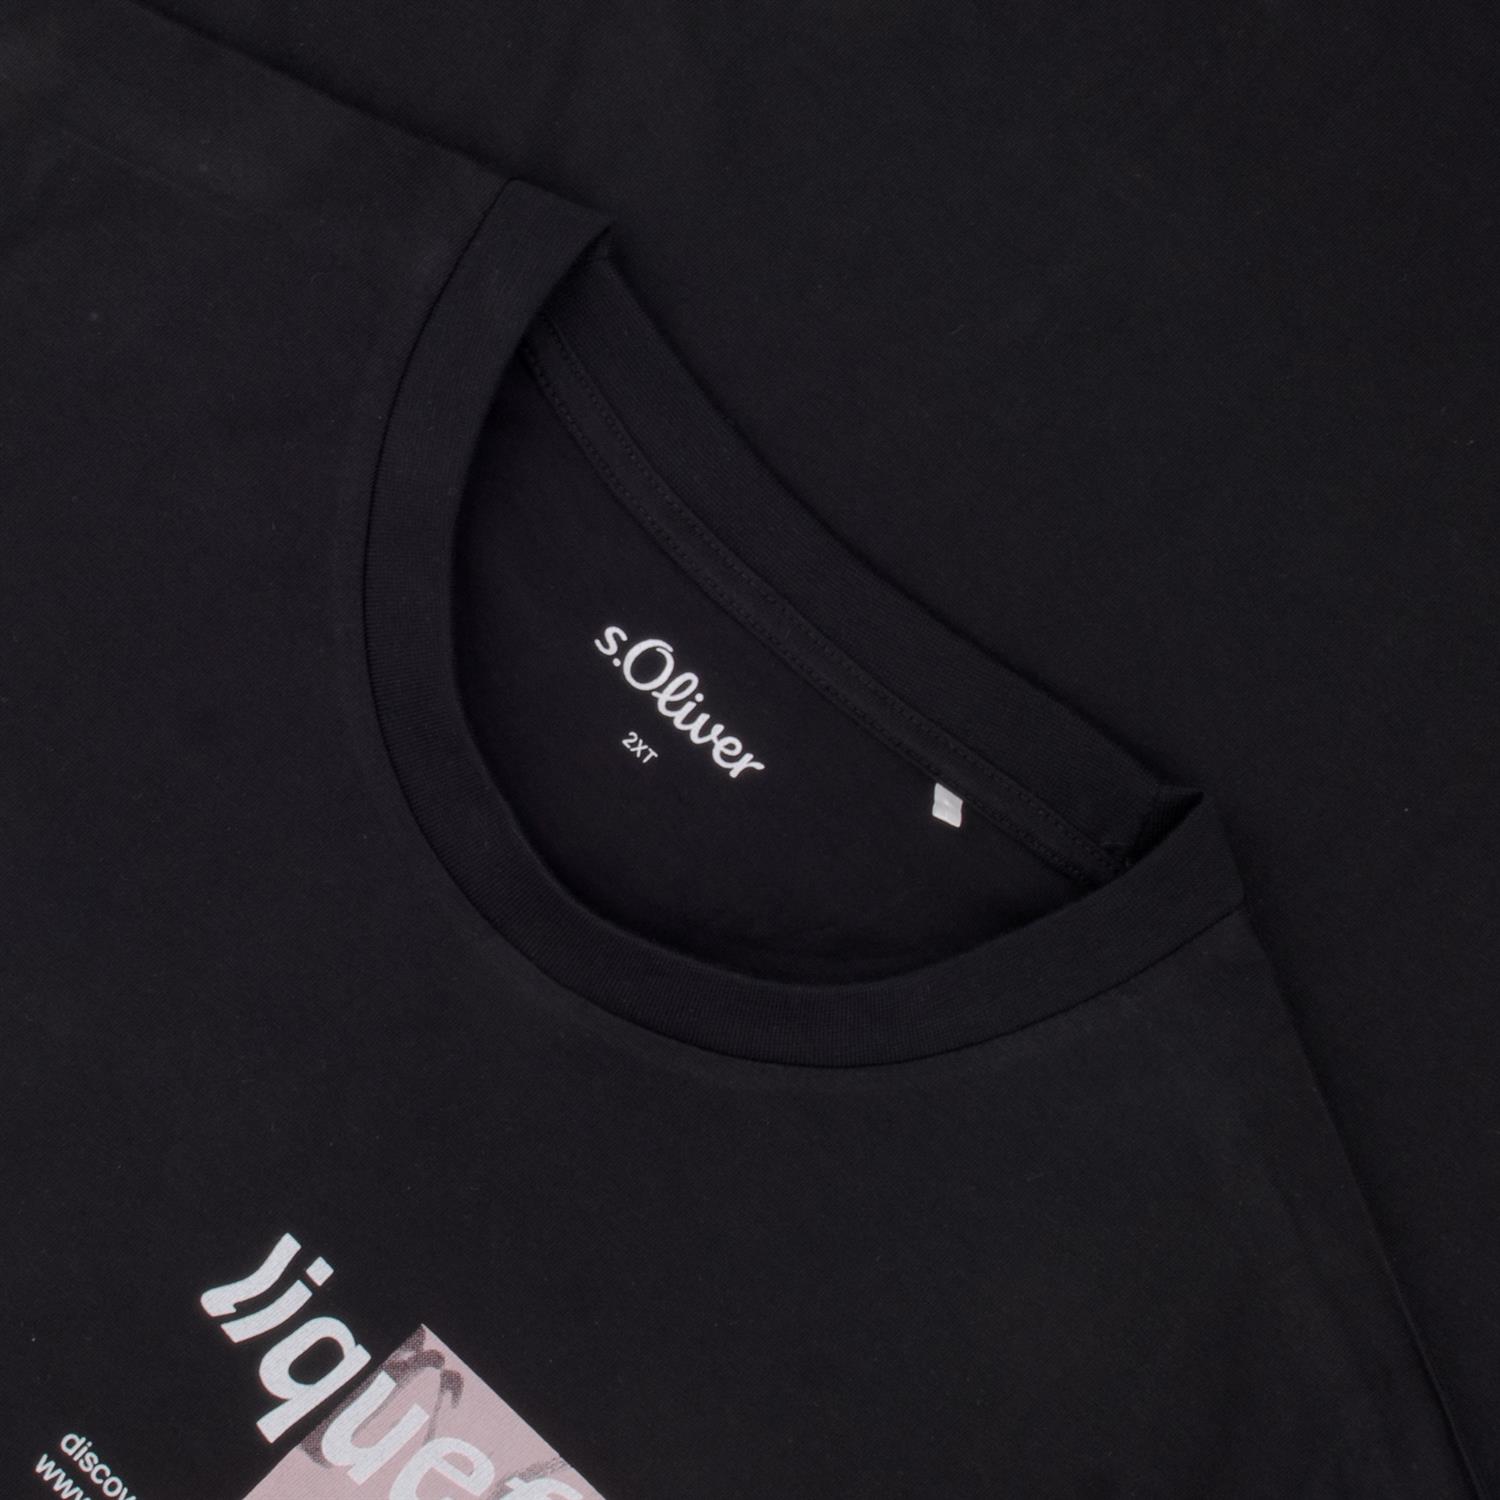 S.OLIVER T-Shirt - kaufen schwarz in Übergrößen Herrenmode lang EXTRA